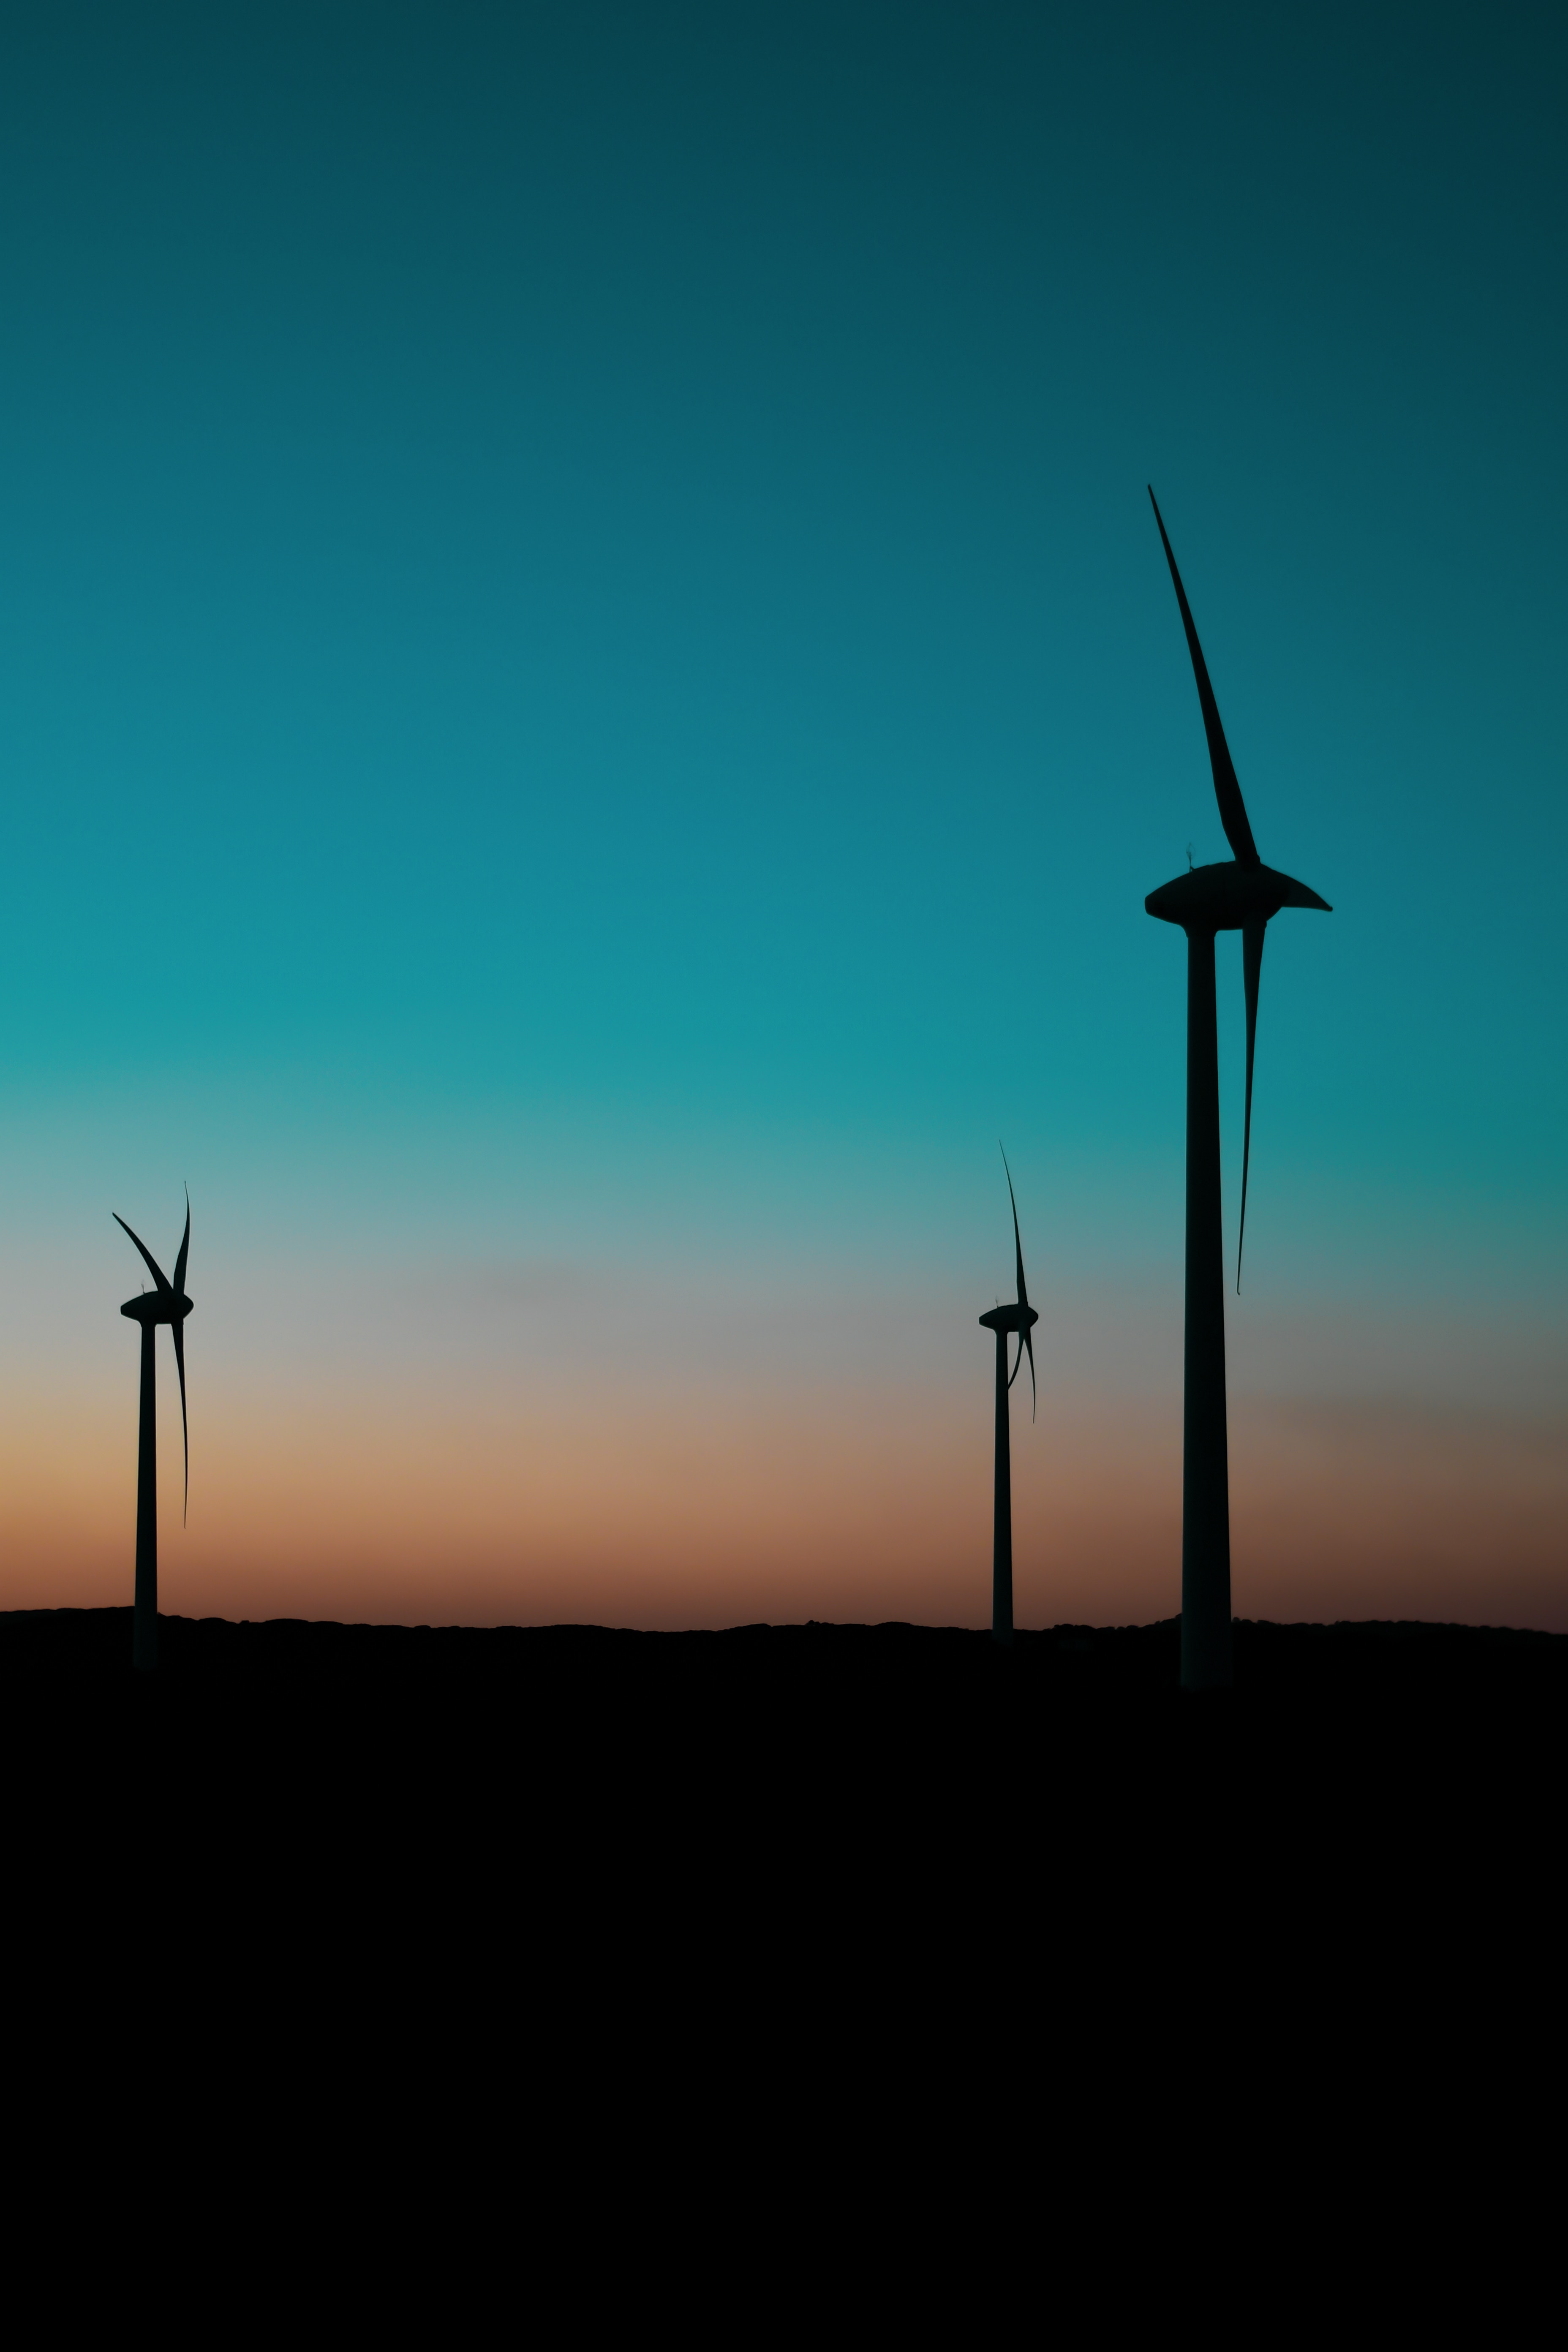 dark, twilight, dusk, pillars, posts, wind power plant, turbines, turbine, blades images